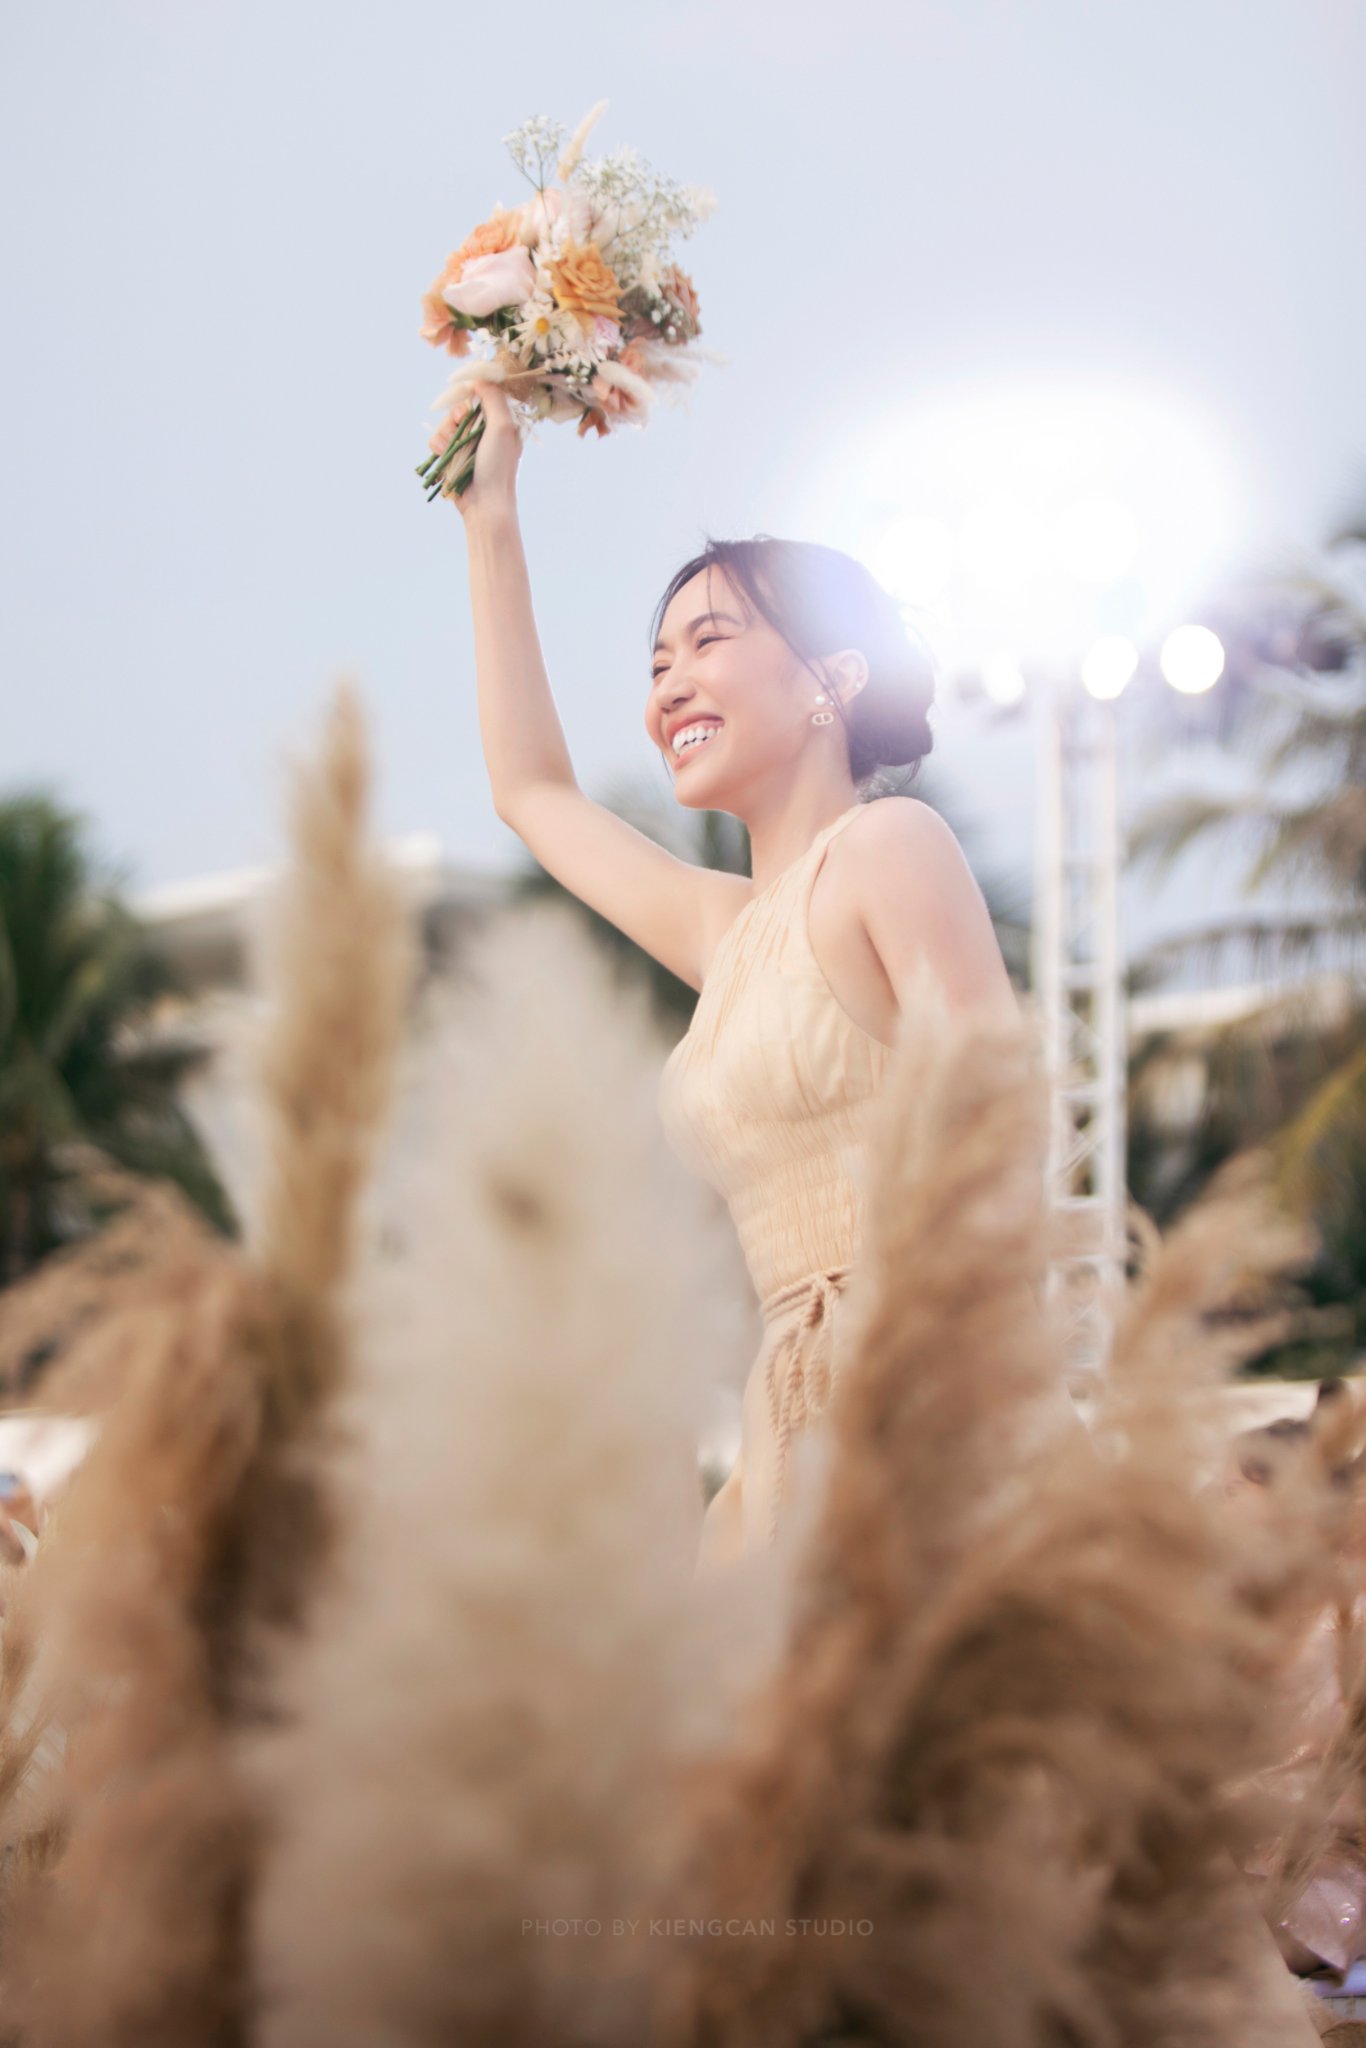 Lộ diện nữ ngôi sao may mắn bắt được hoa cưới của cô dâu Minh Hằng, CĐM liền hào hứng: Cưới gấp chị ơi!